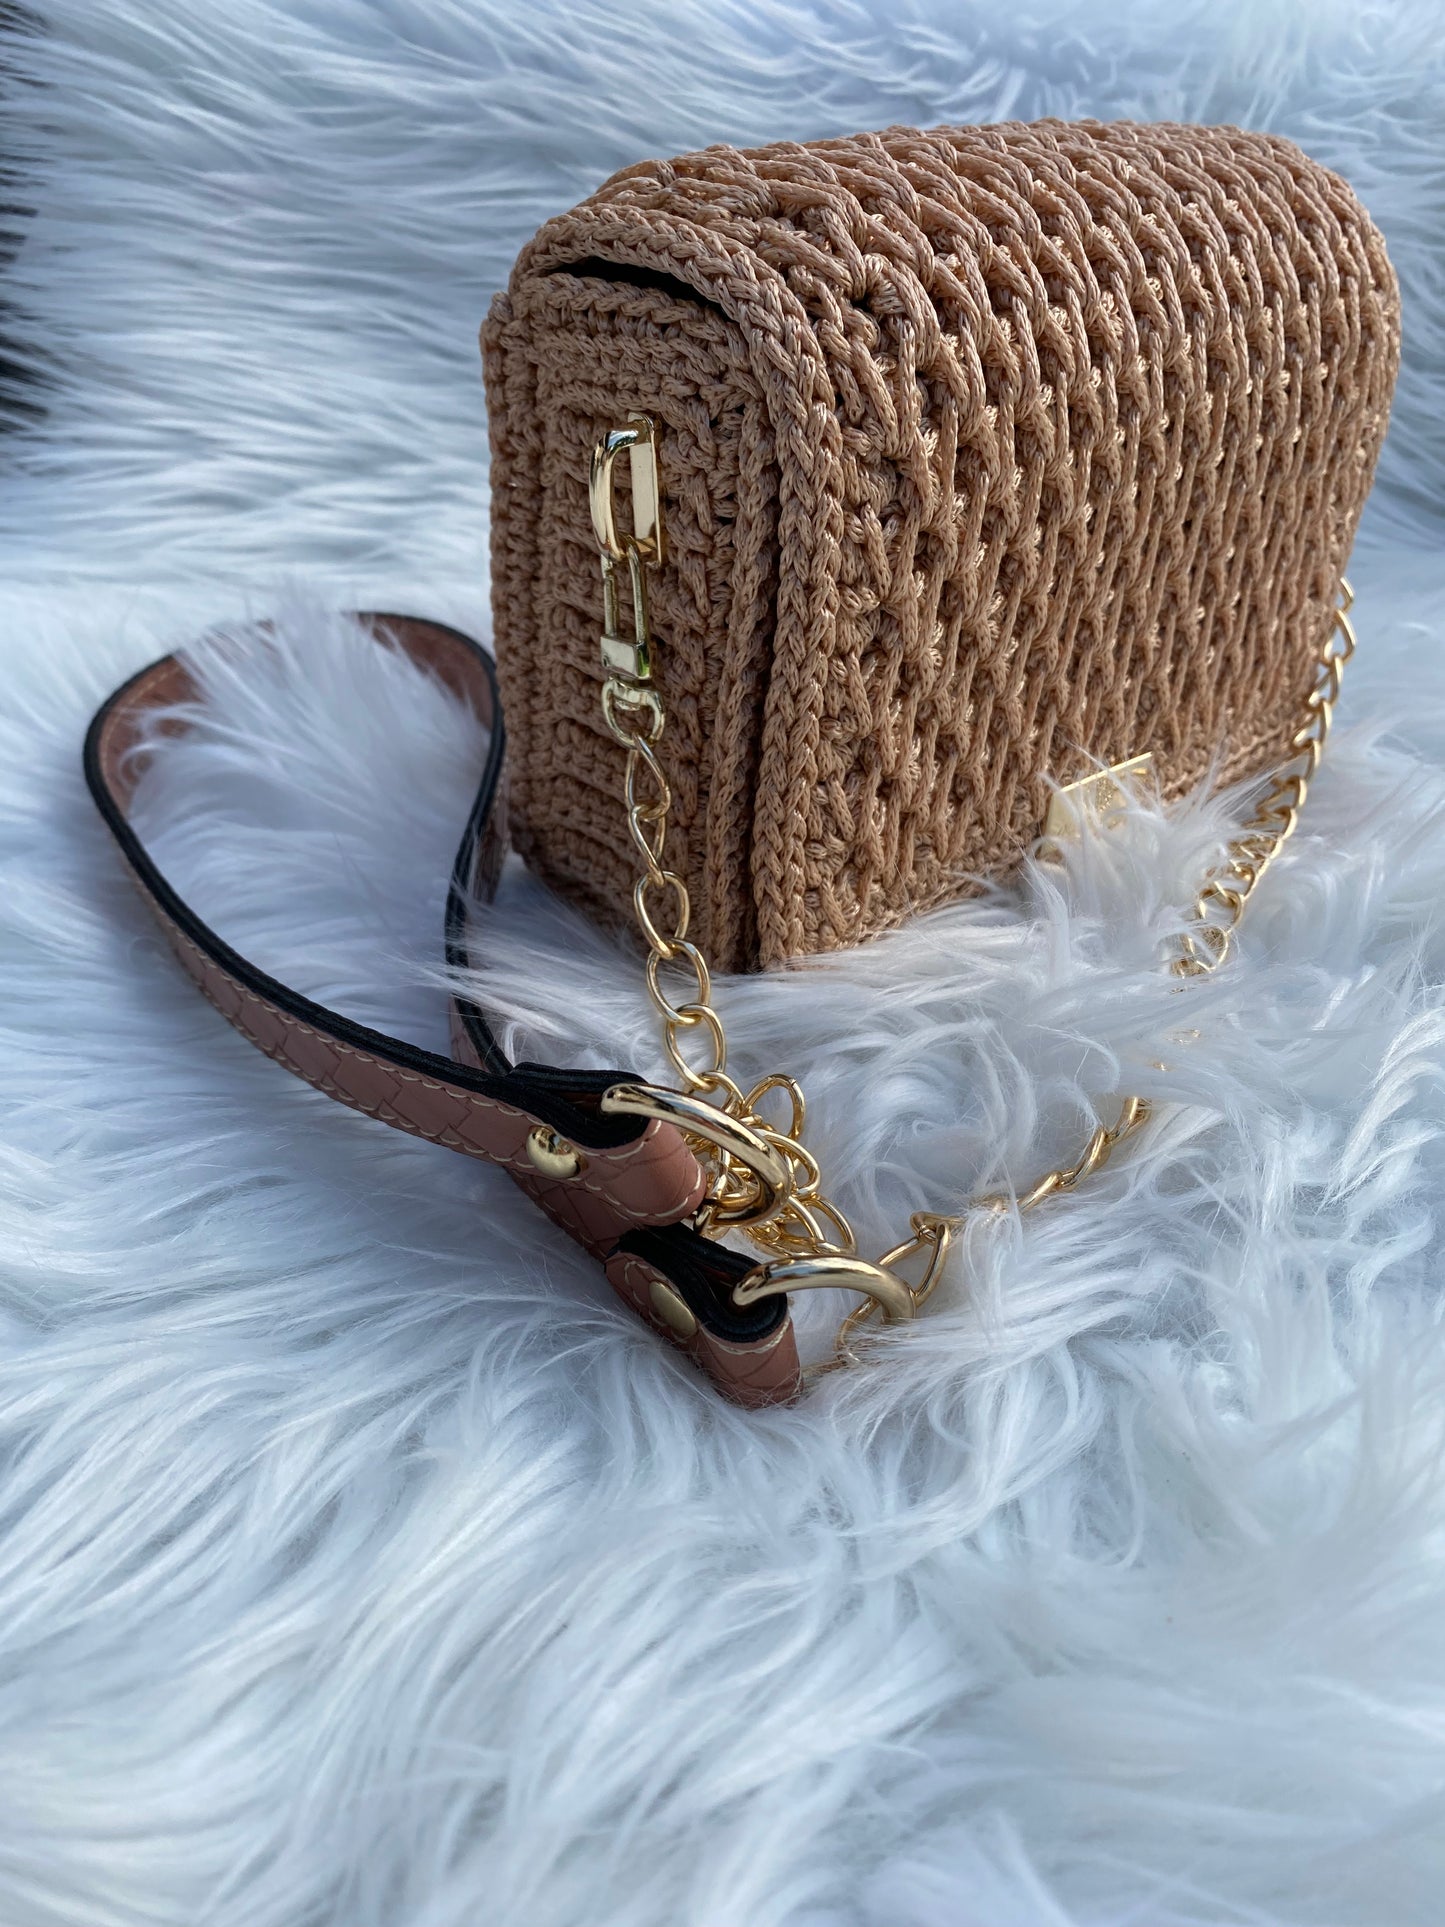 Exquisite beige mini handbag